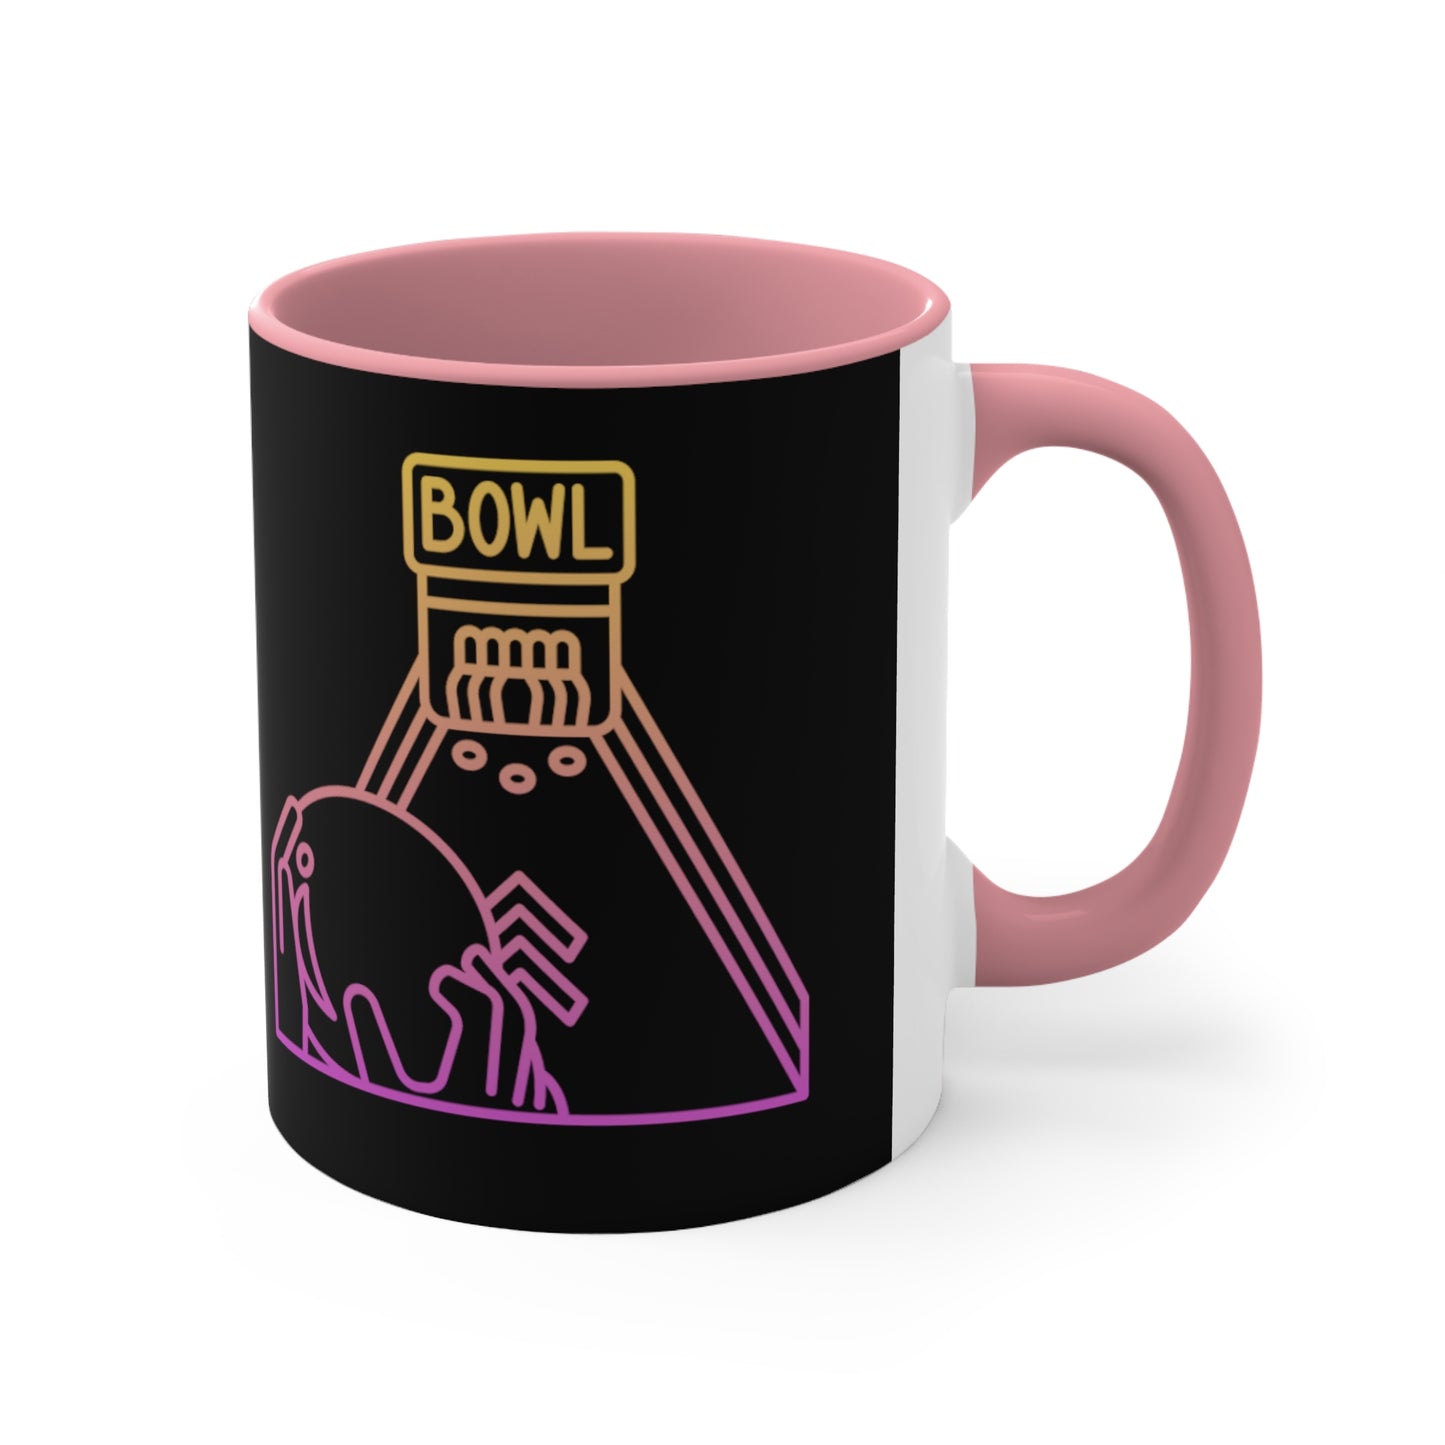 Accent Coffee Mug, 11oz: Bowling Black